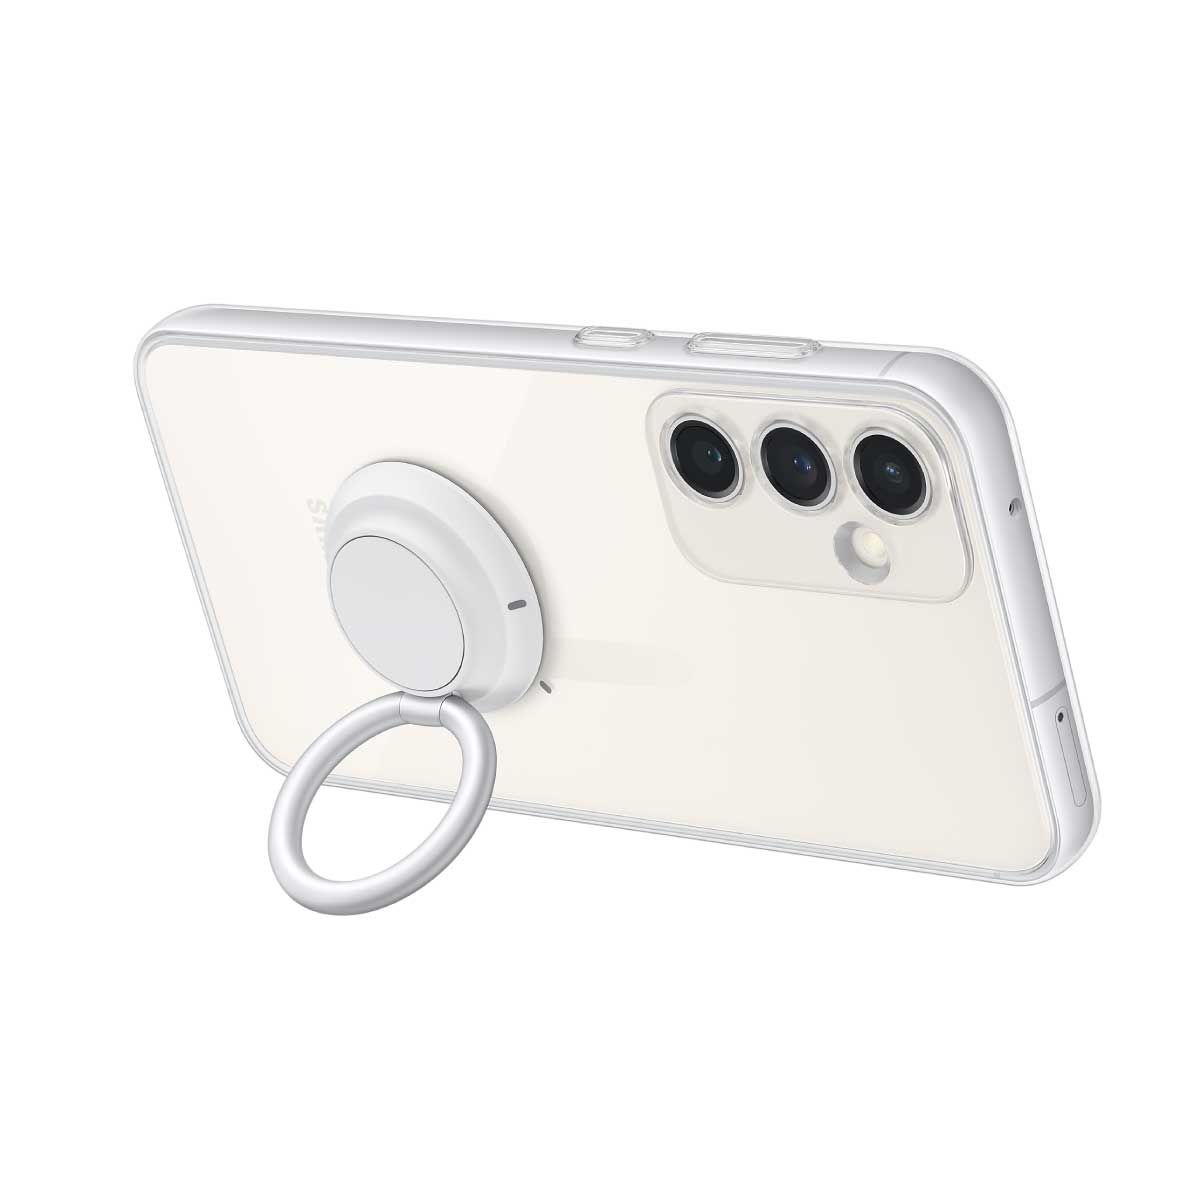 Samsung Galaxy S23 FE Clear Gadget Case  ( สำหรับรุ่น Galaxy S 23 FE )